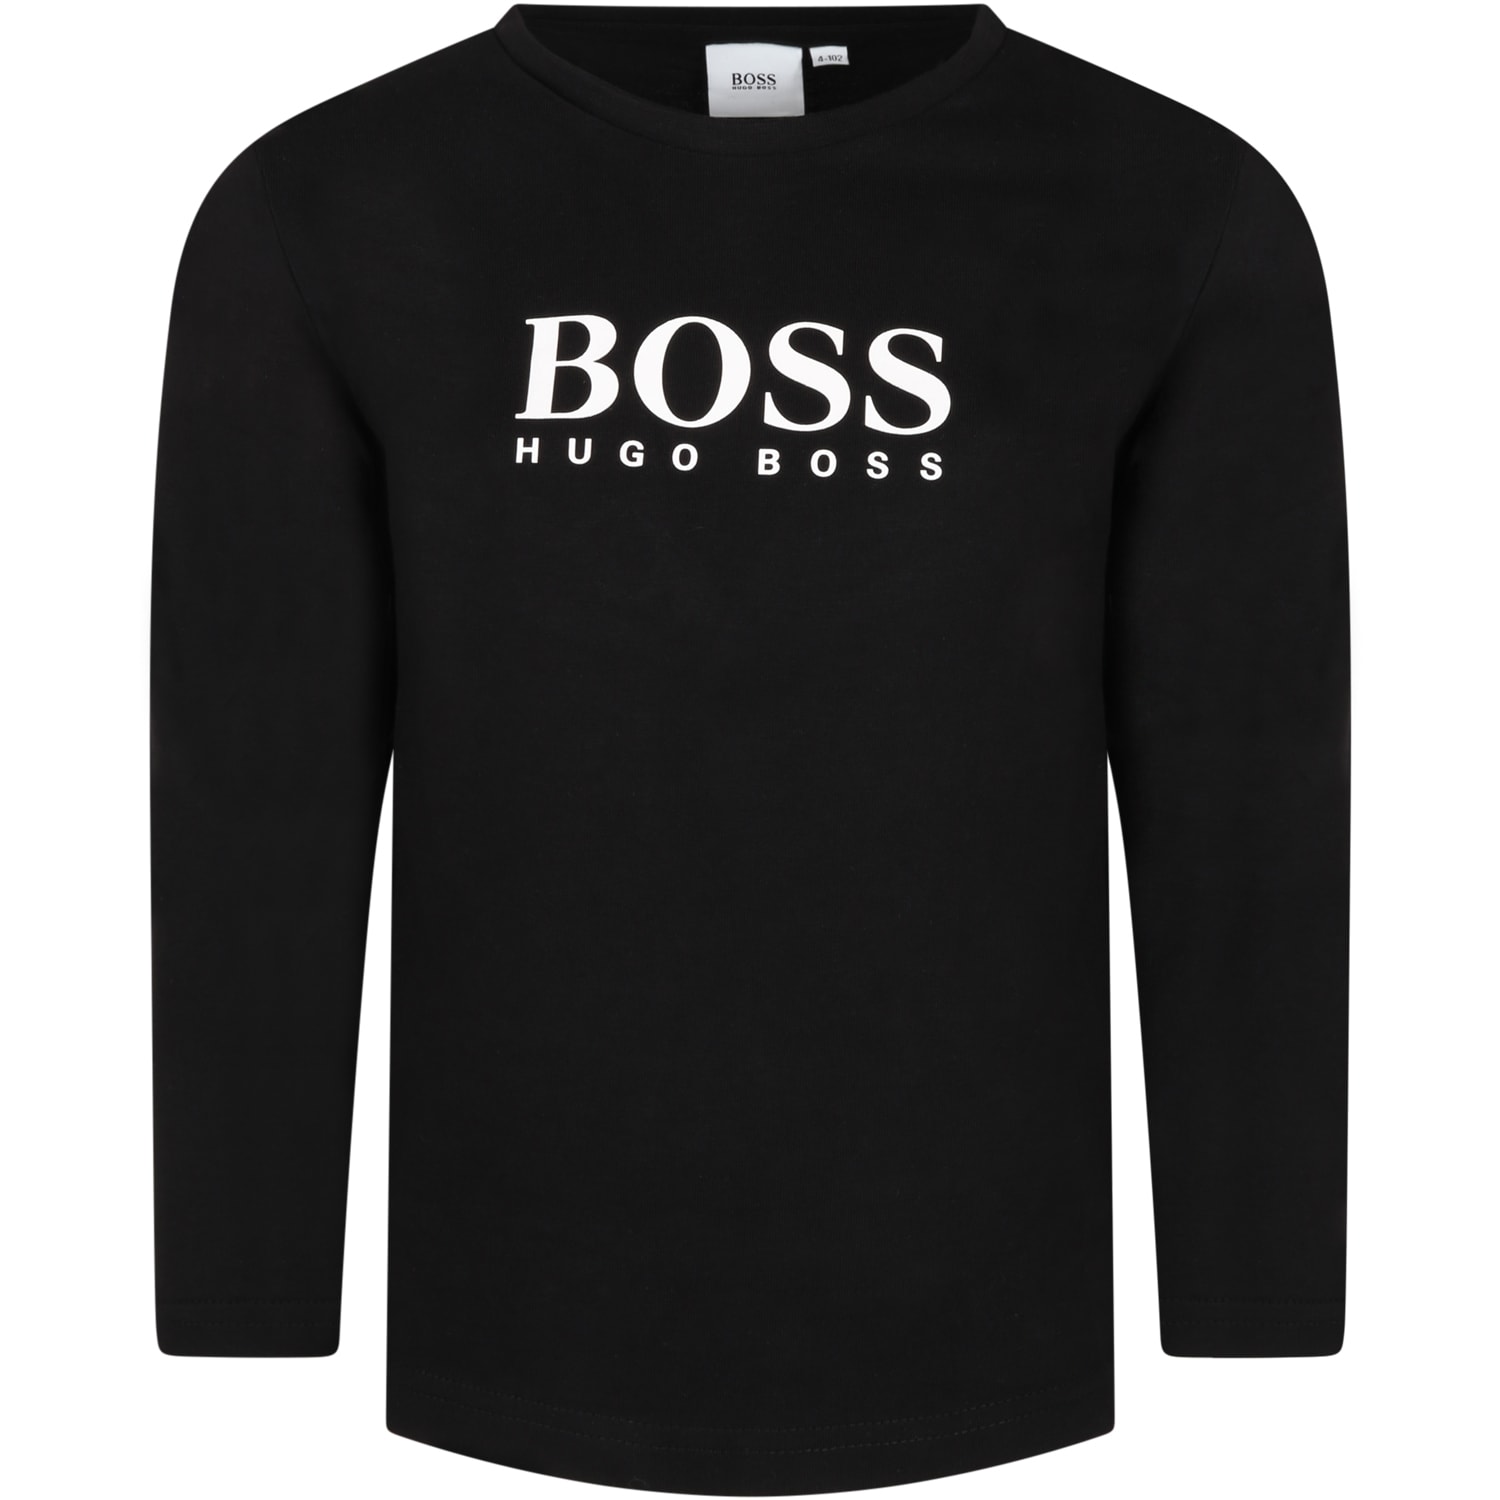 Hugo Boss Black T-shirt For Kids With Logo